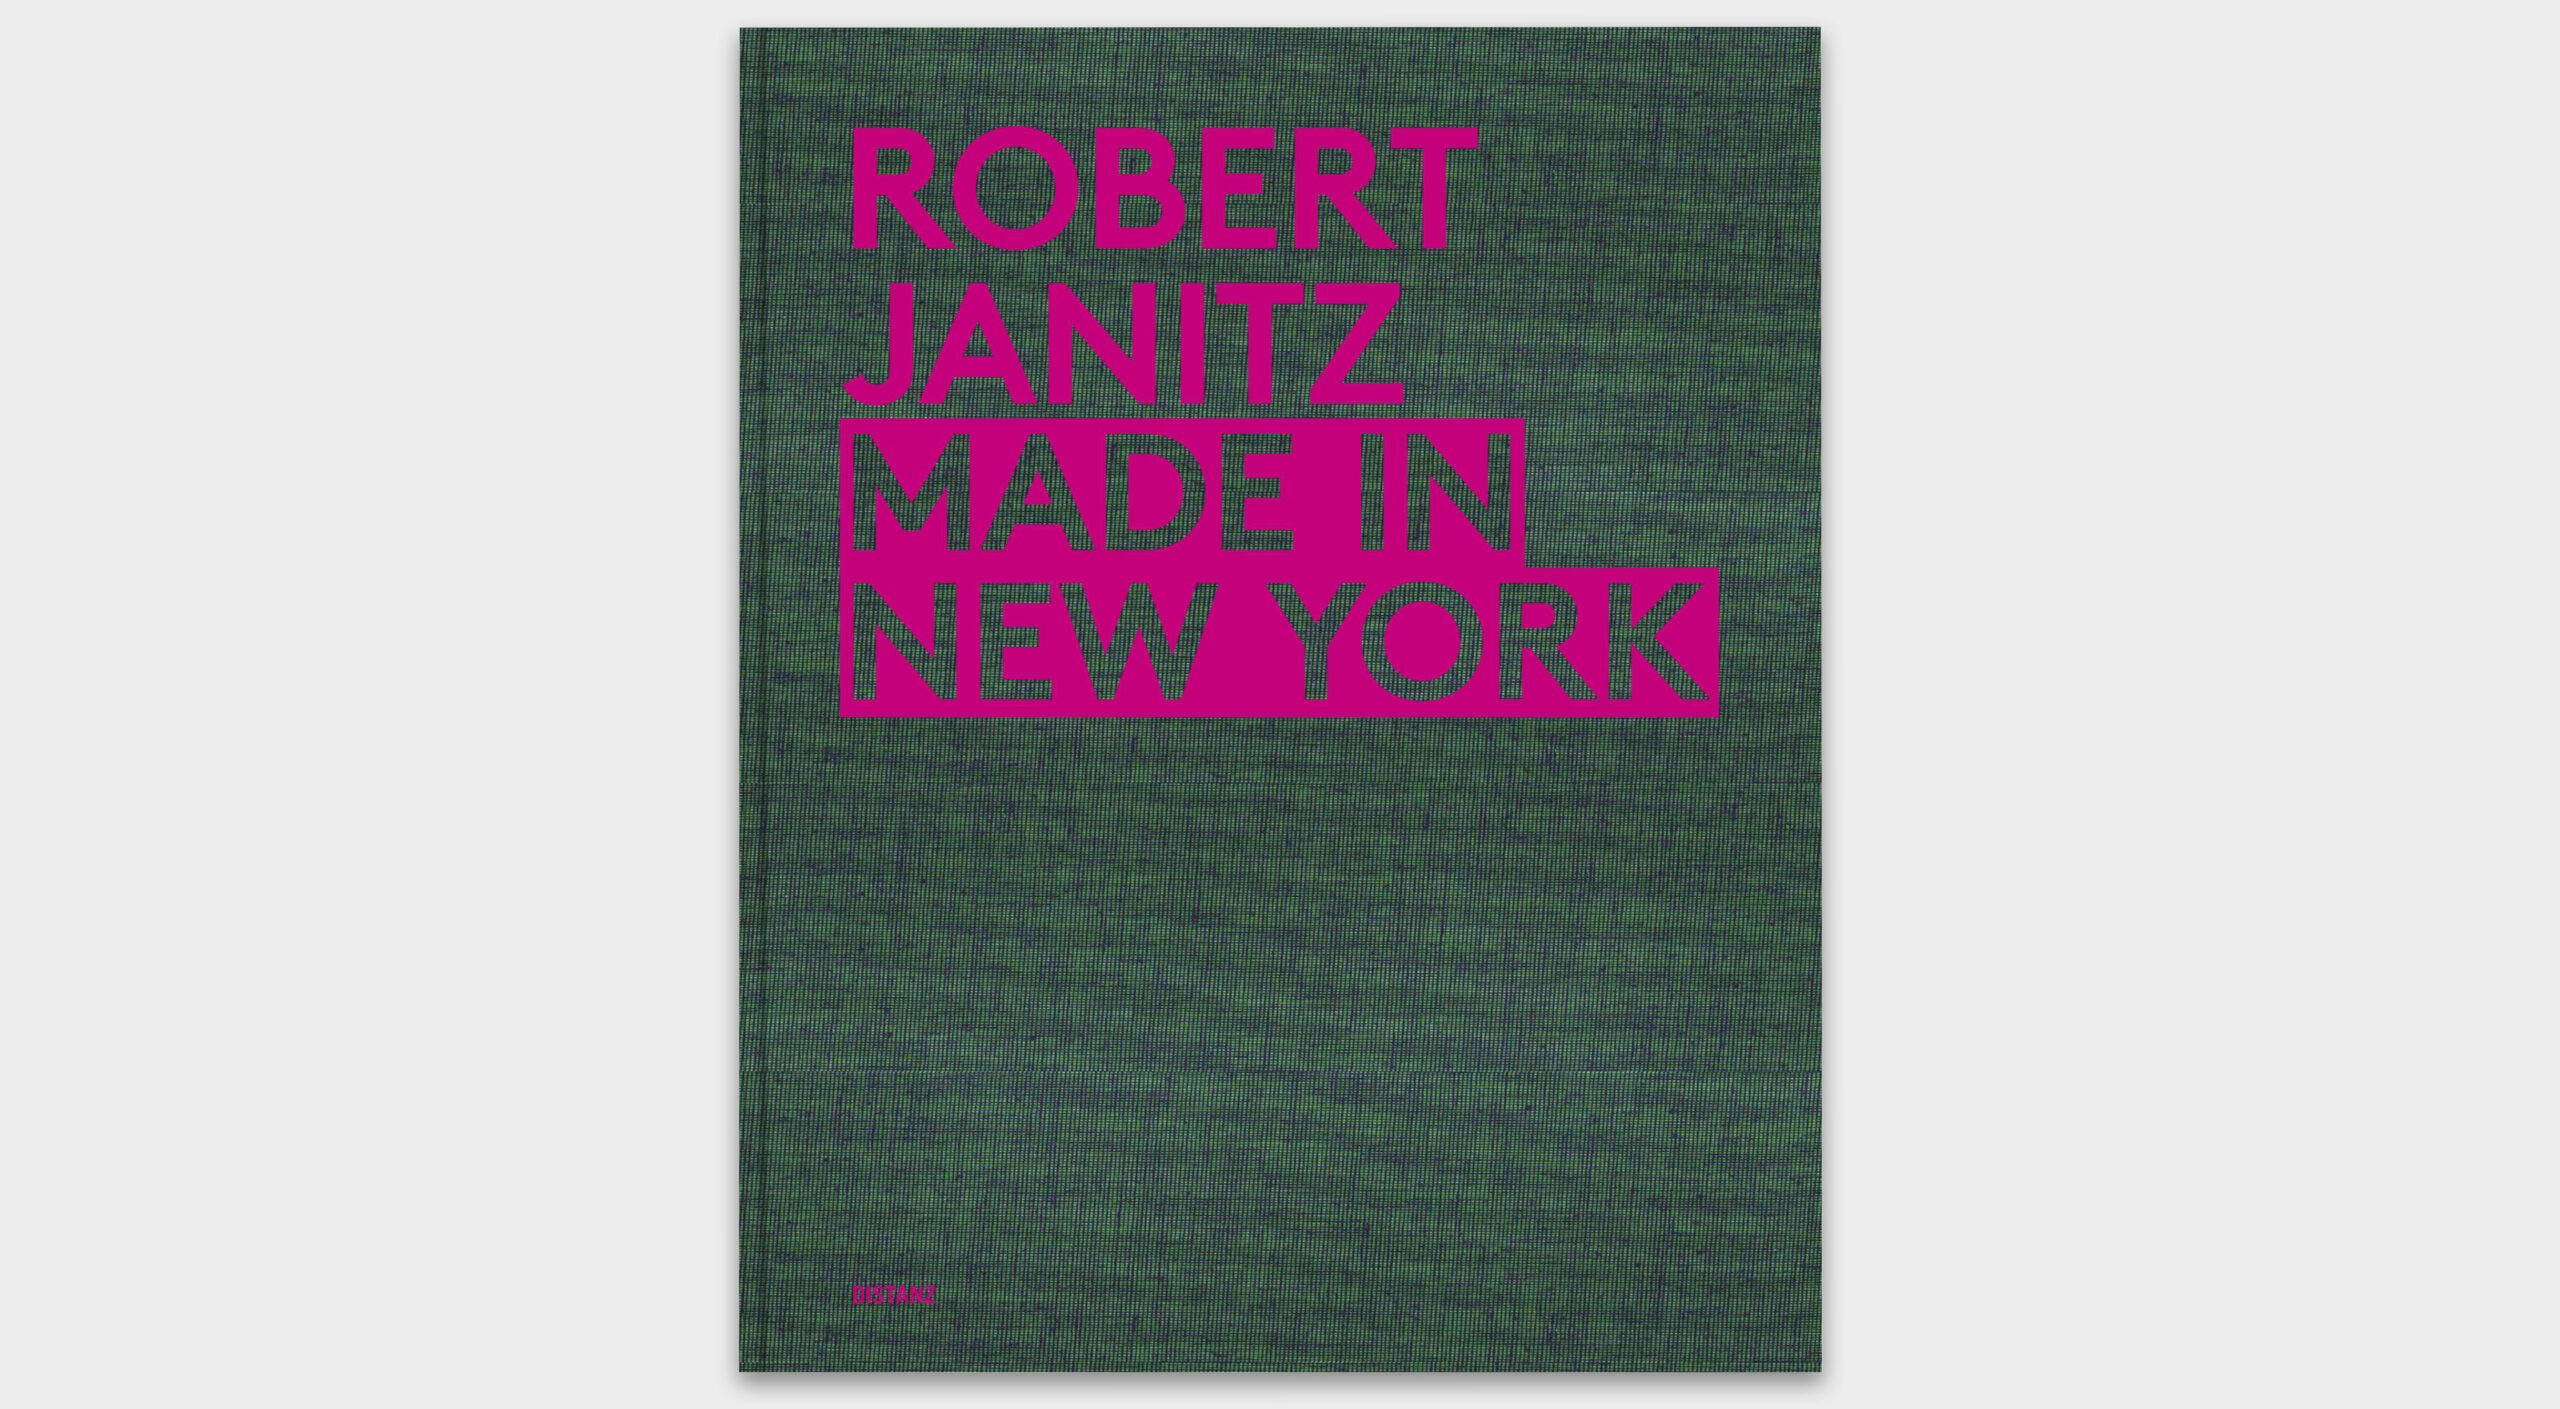 RobertJanitz-cover.jpg-OVR